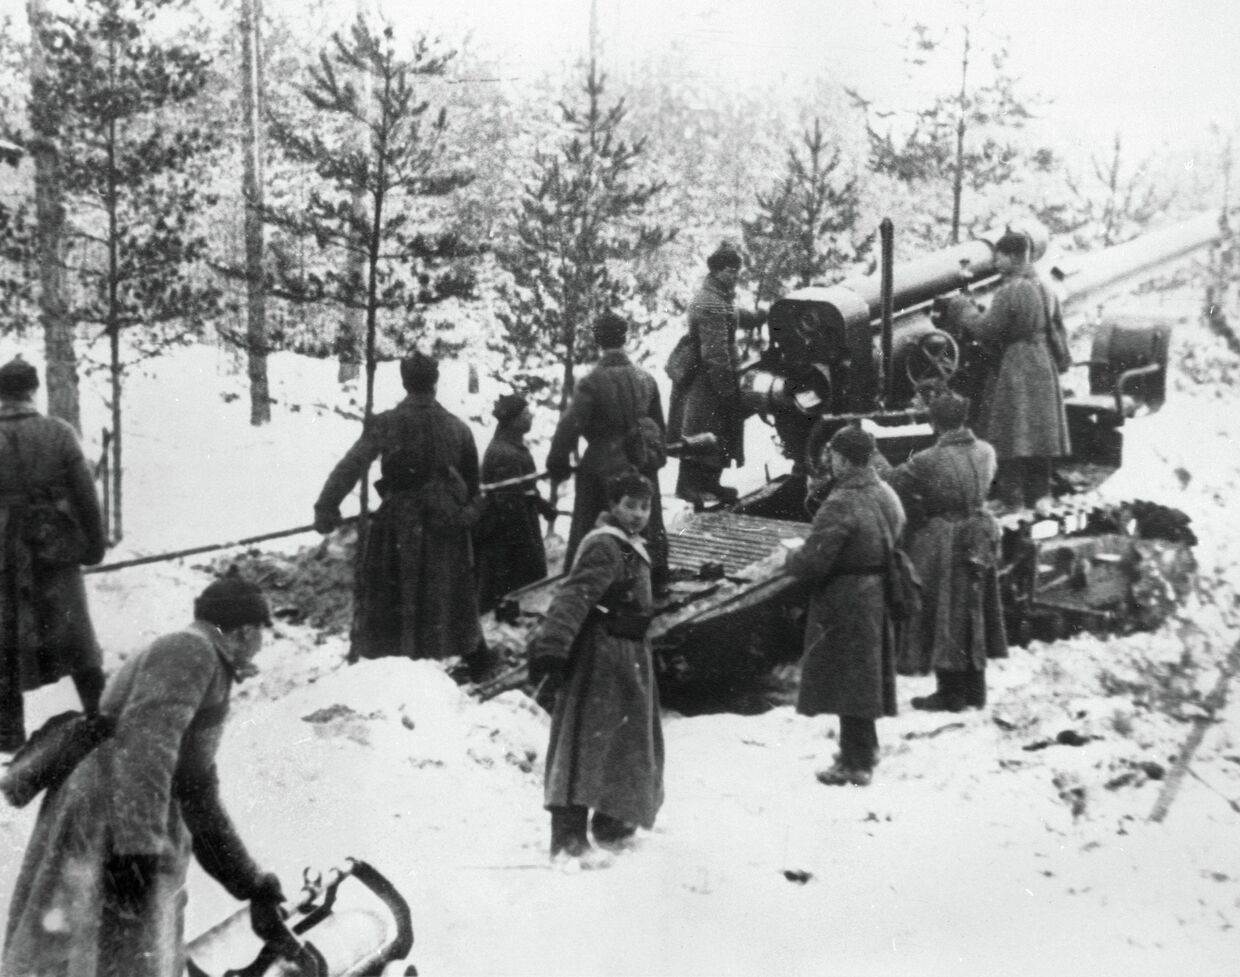 Бойцы Красной Армии обстреливают финские укрепления